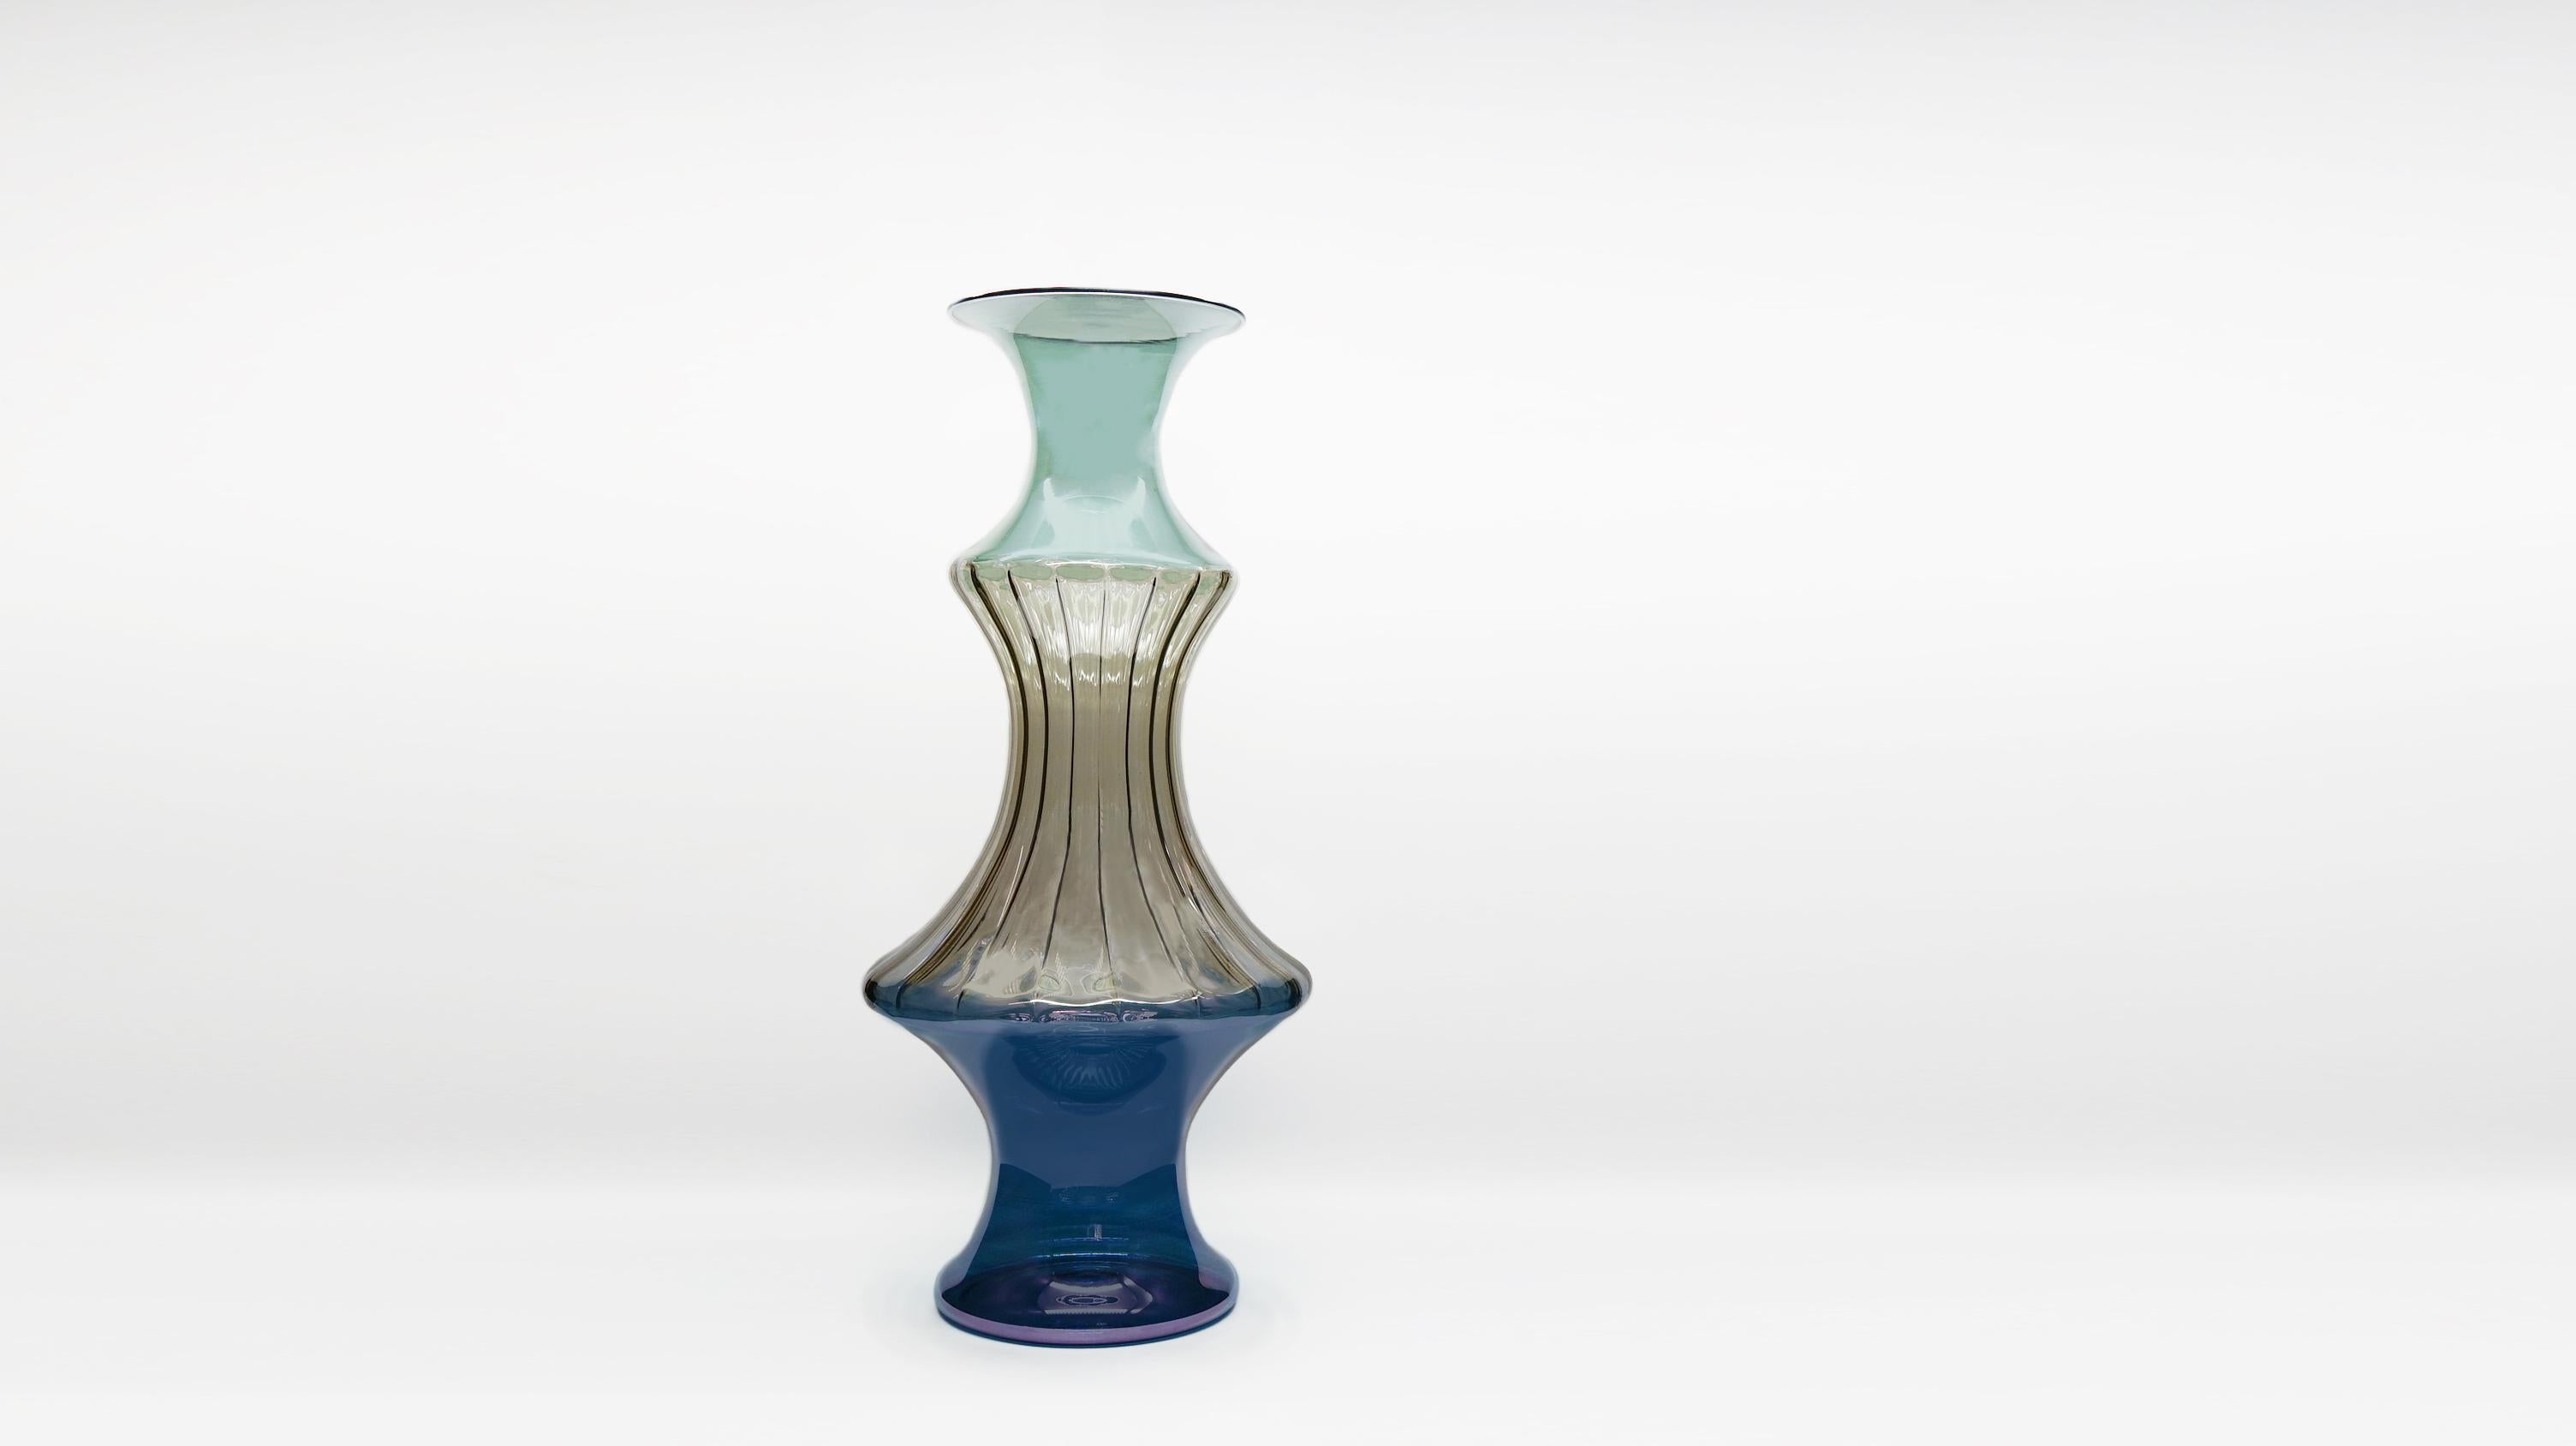 Le vase Madame réinterprète les vases vénitiens traditionnels, les détails raffinés et les couleurs délicates.
Le design découle de la répétition de l'évasement typique, qui, répété avec un découpage et une composition soignés, crée des formes